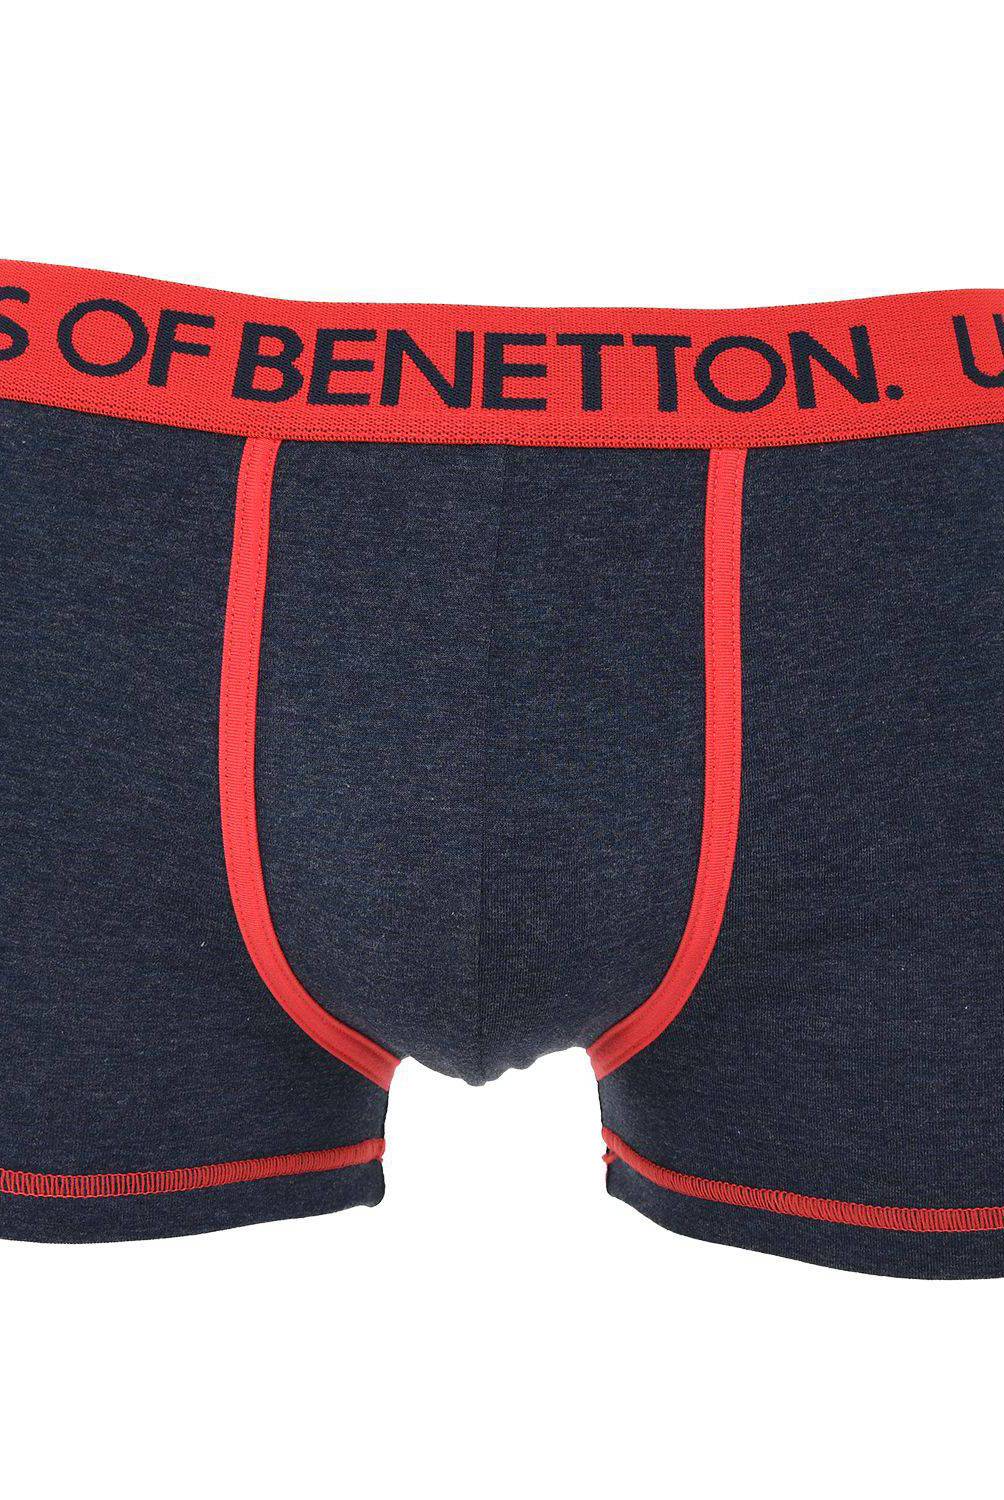 BENETTON - Pack De 5 Bóxer Algodón Hombre Benetton